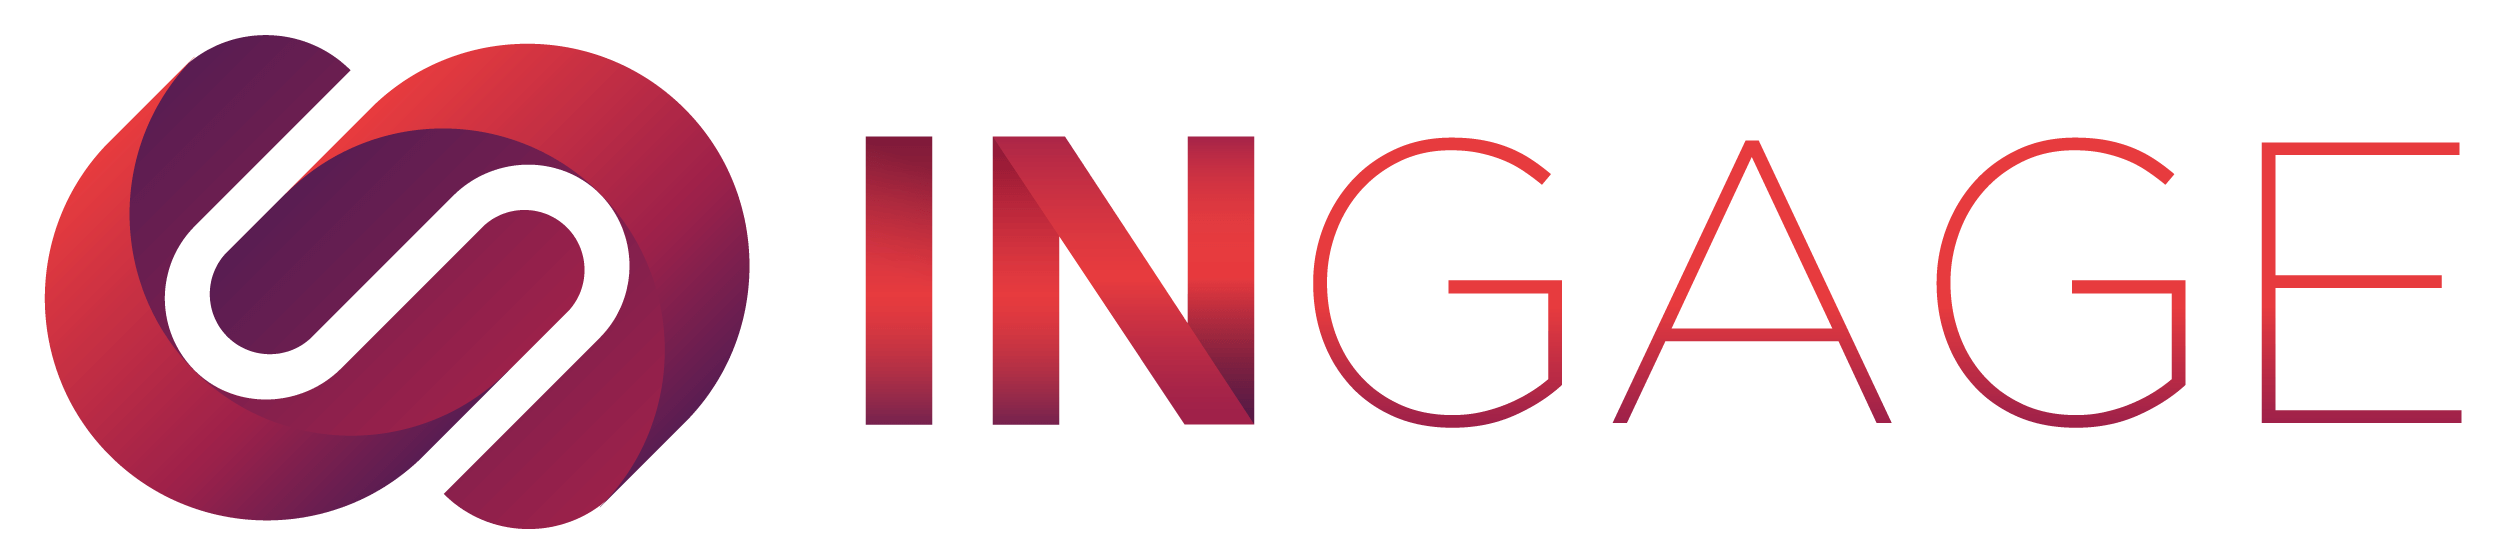 logo-ingage-principal-horizontal-2-1.png